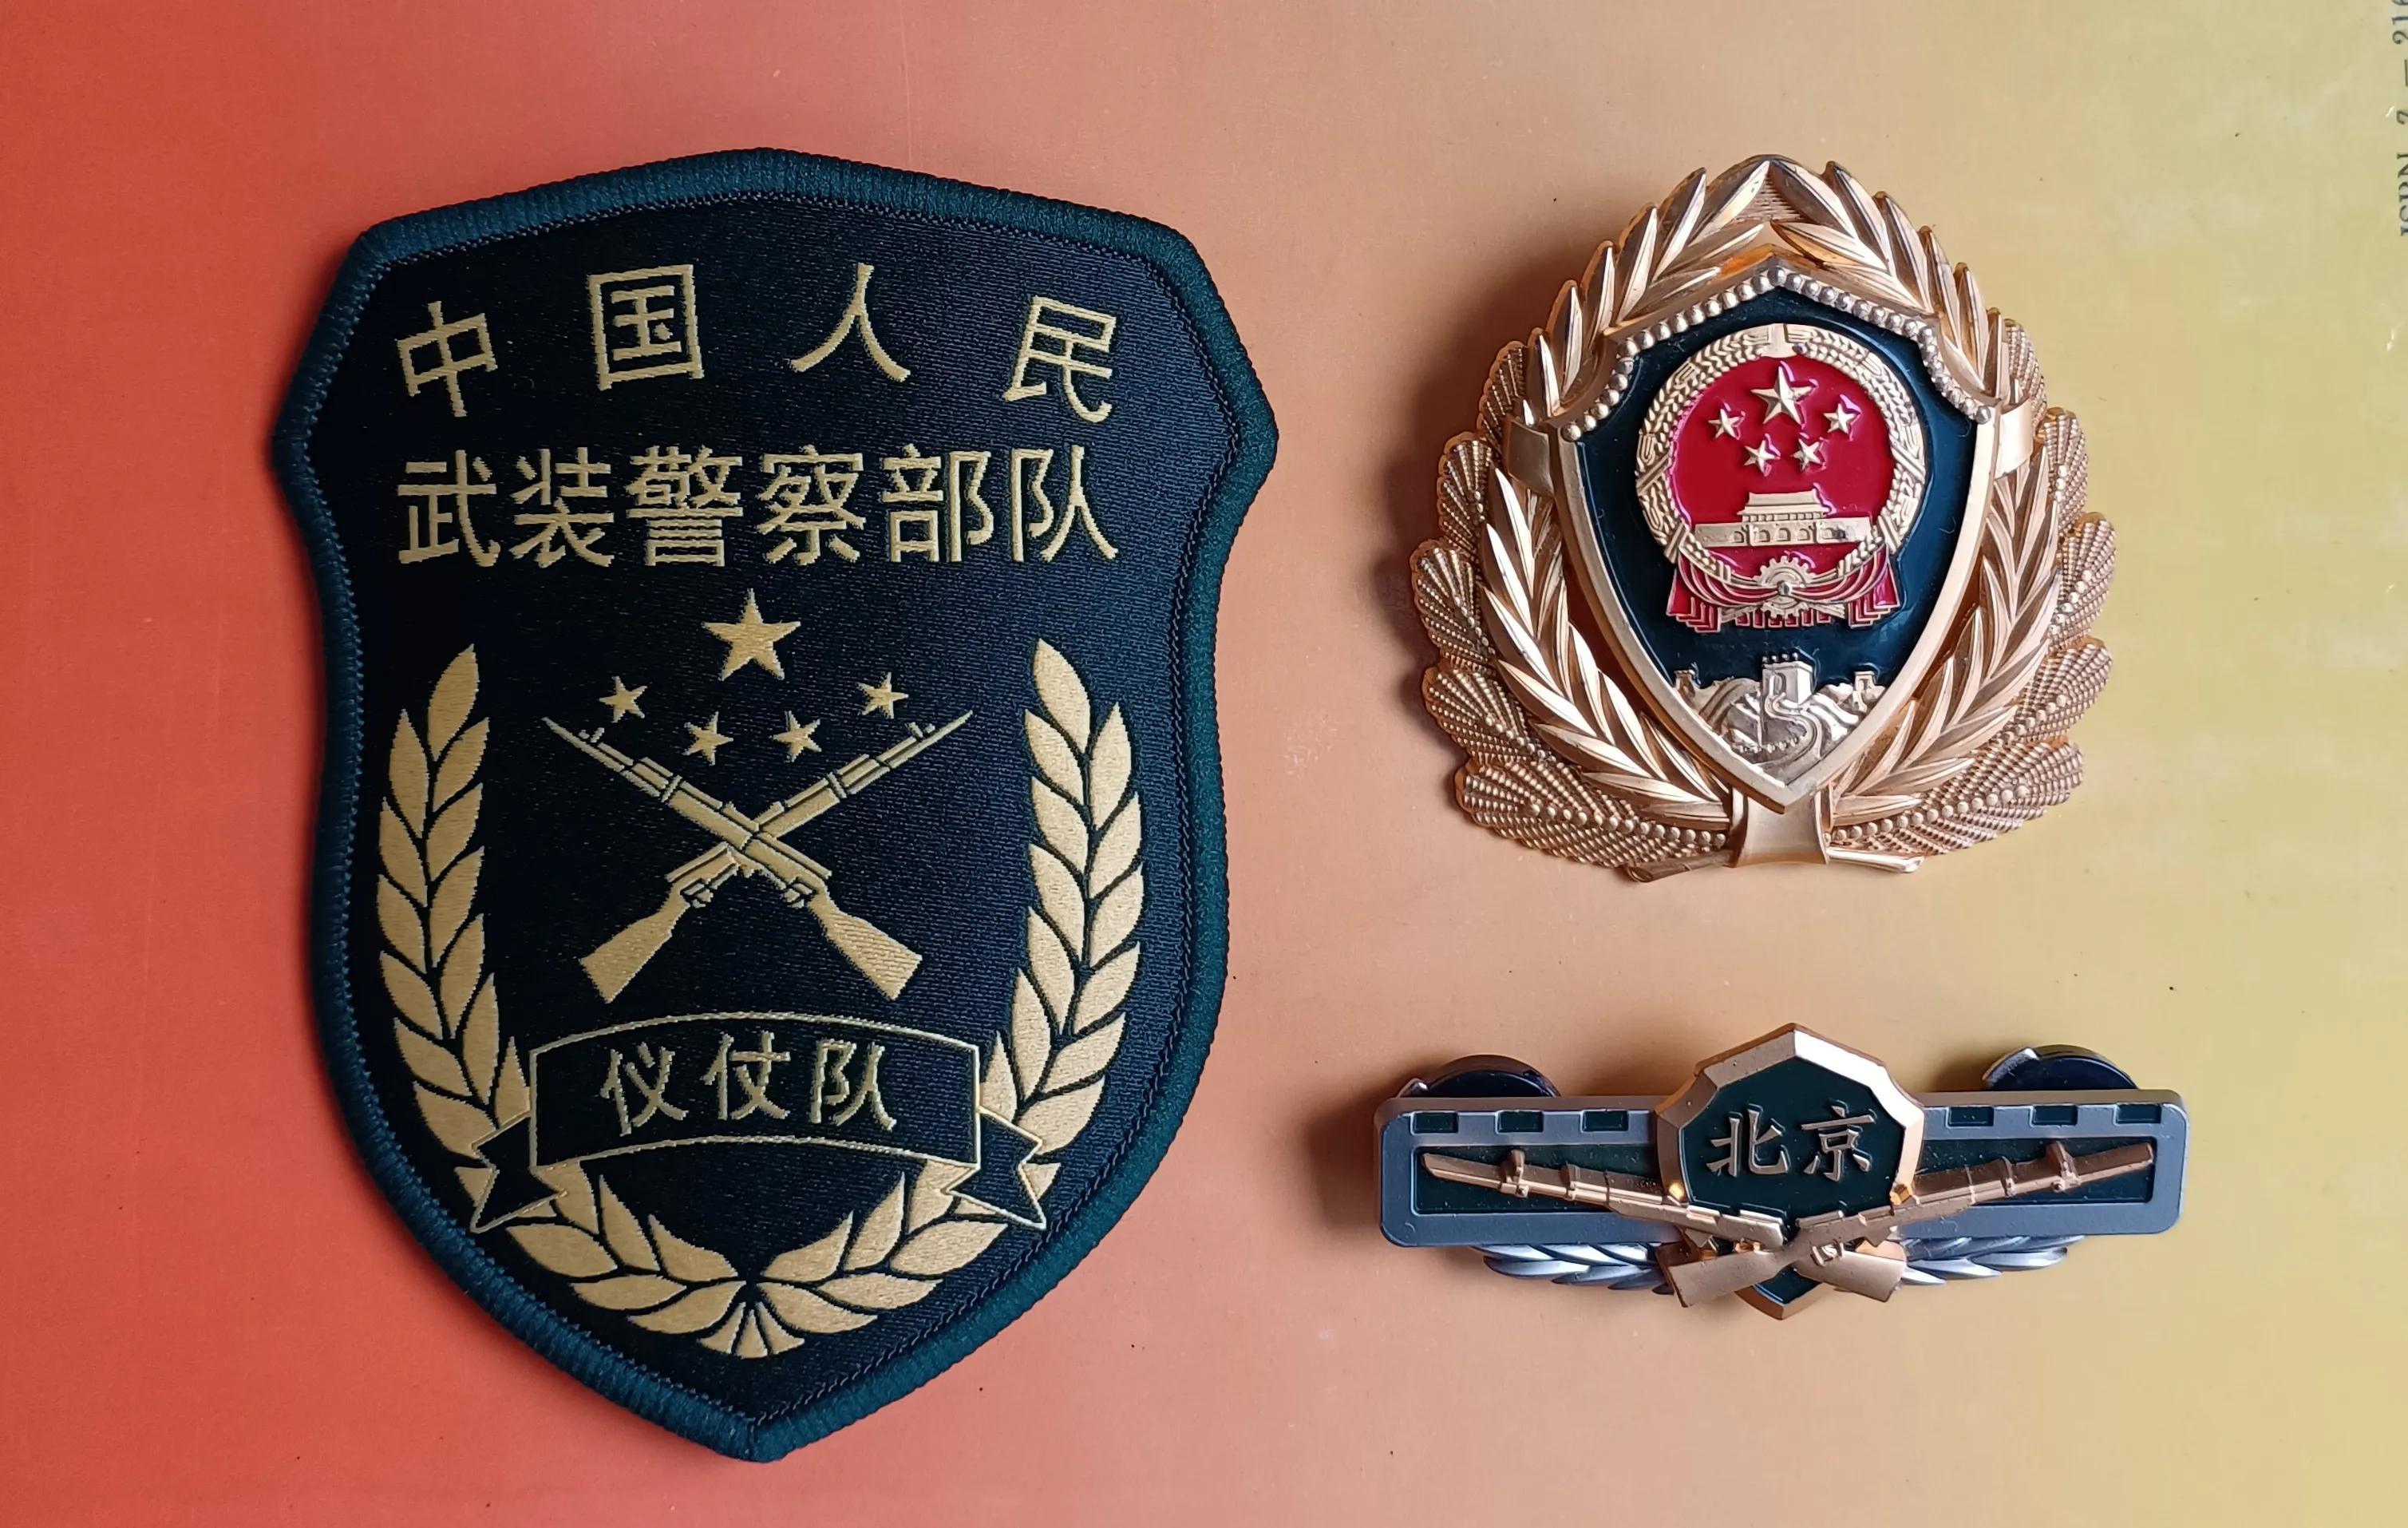 毛启国:武警部队16式臂章鉴赏